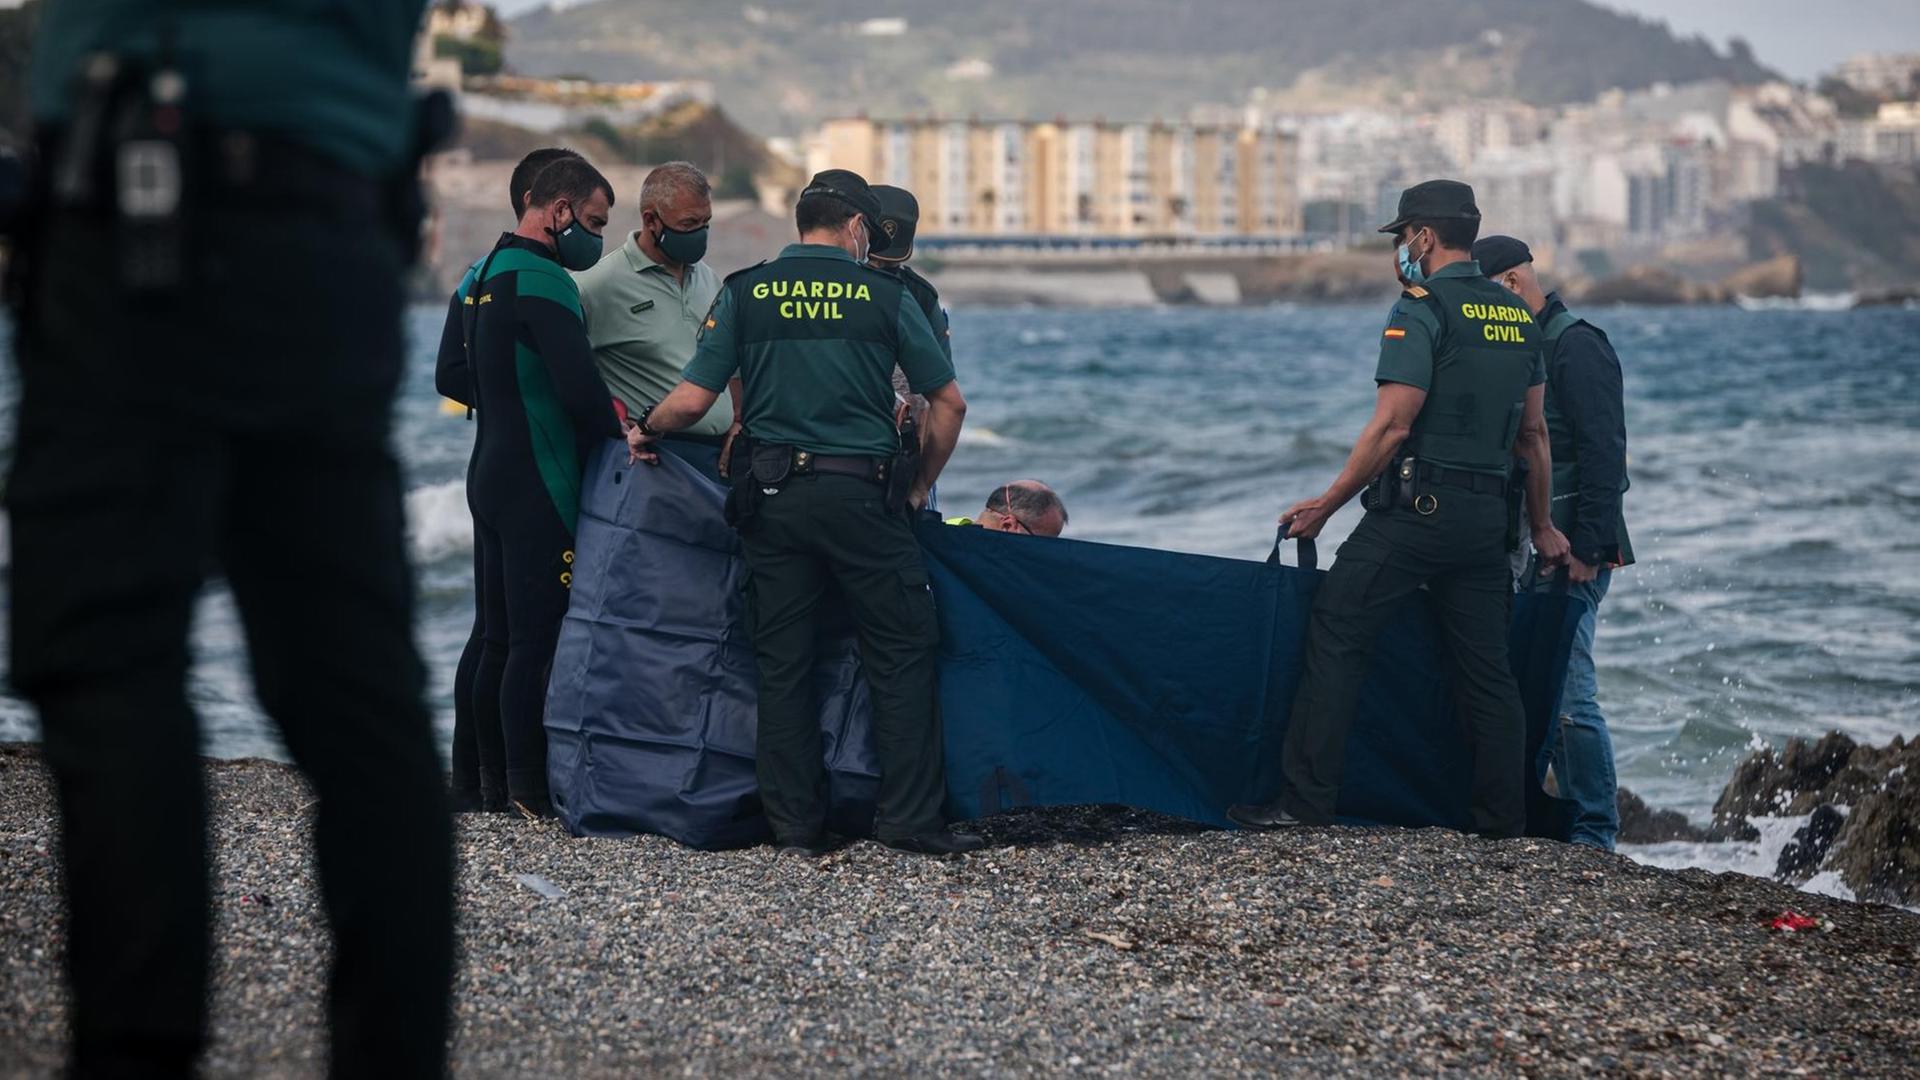 Die spanische Polizei in Ceuta hat einen toten Menschen am Strand gefunden 